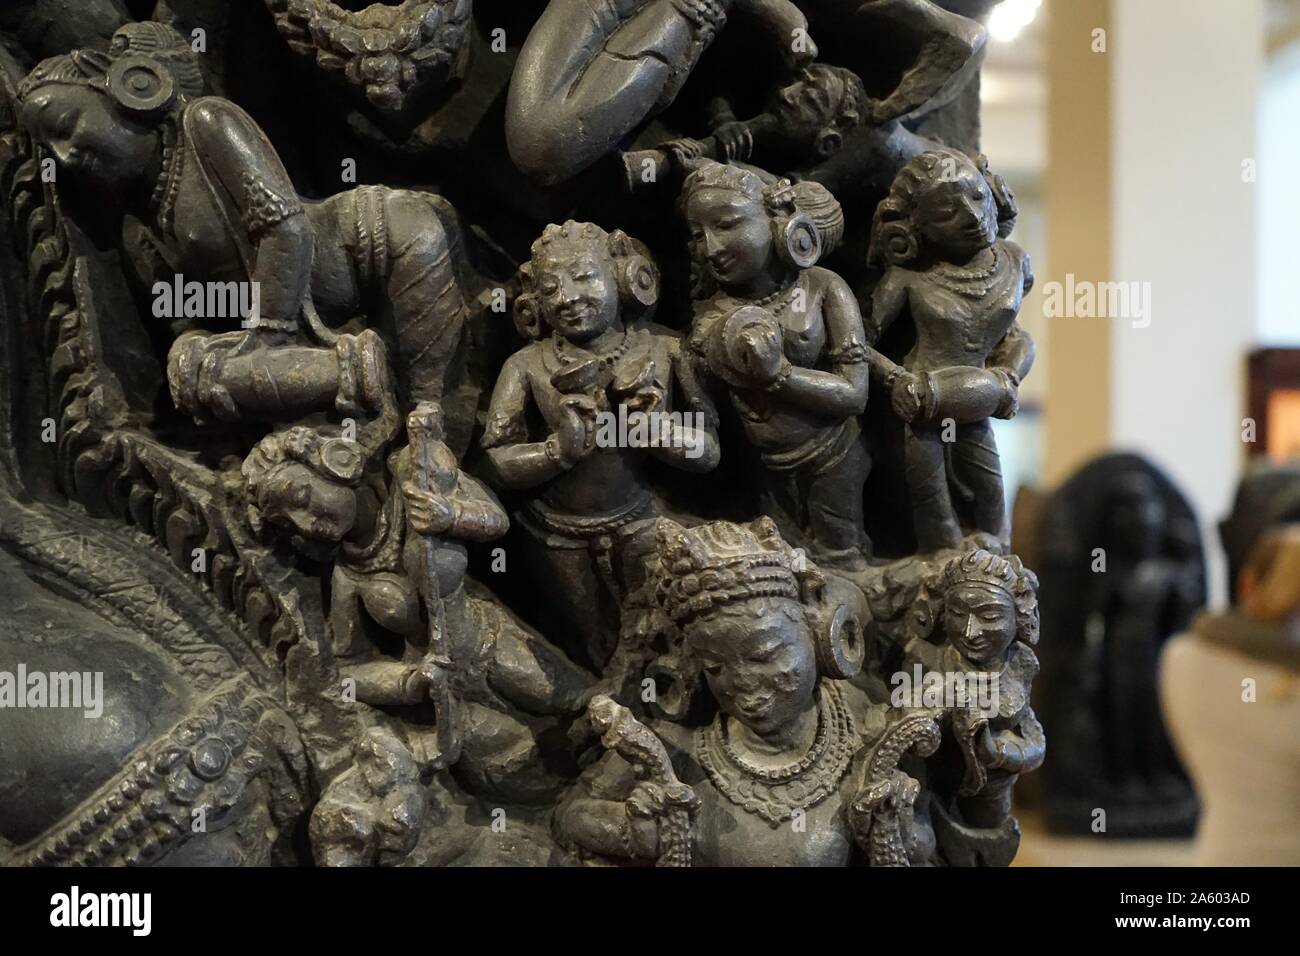 Detalle de una estatua de bronce de la deidad Shiva y la Diosa Parvati sentado como la pareja divina primordial. Fecha del siglo XII. Foto de stock